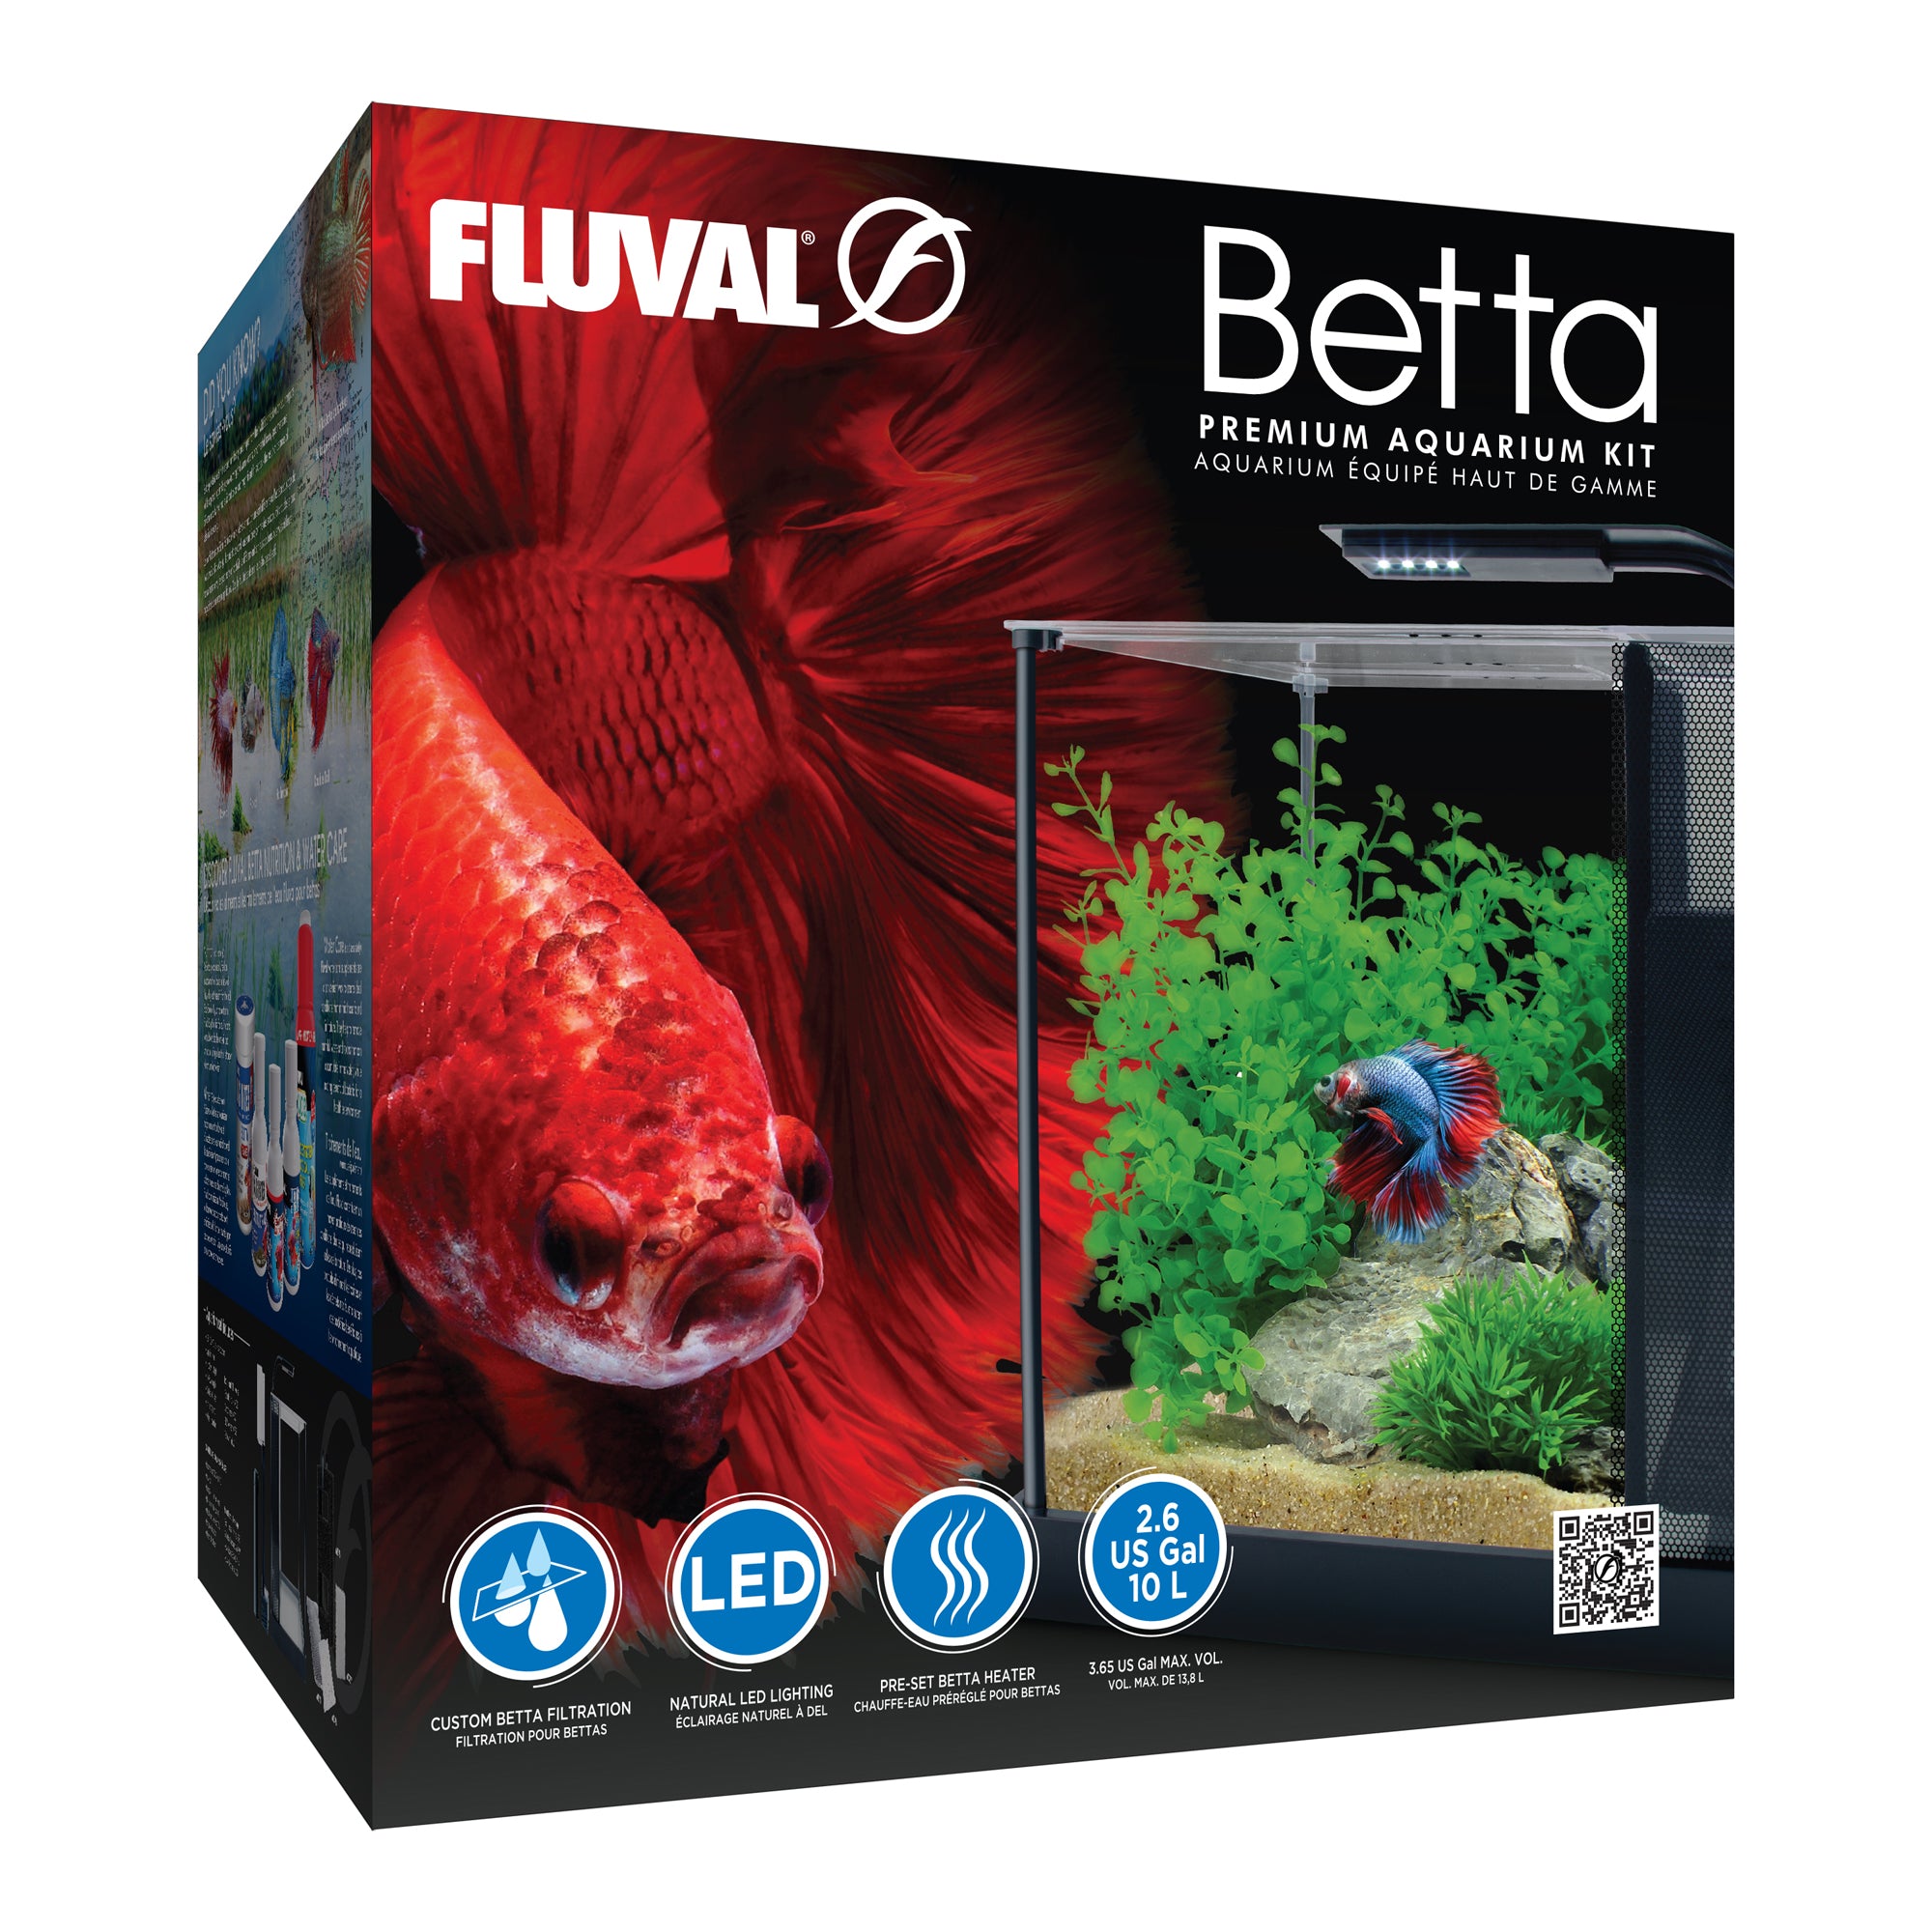 Betta Premium Aquarium Kit, 2.6 US Gal / 10 L